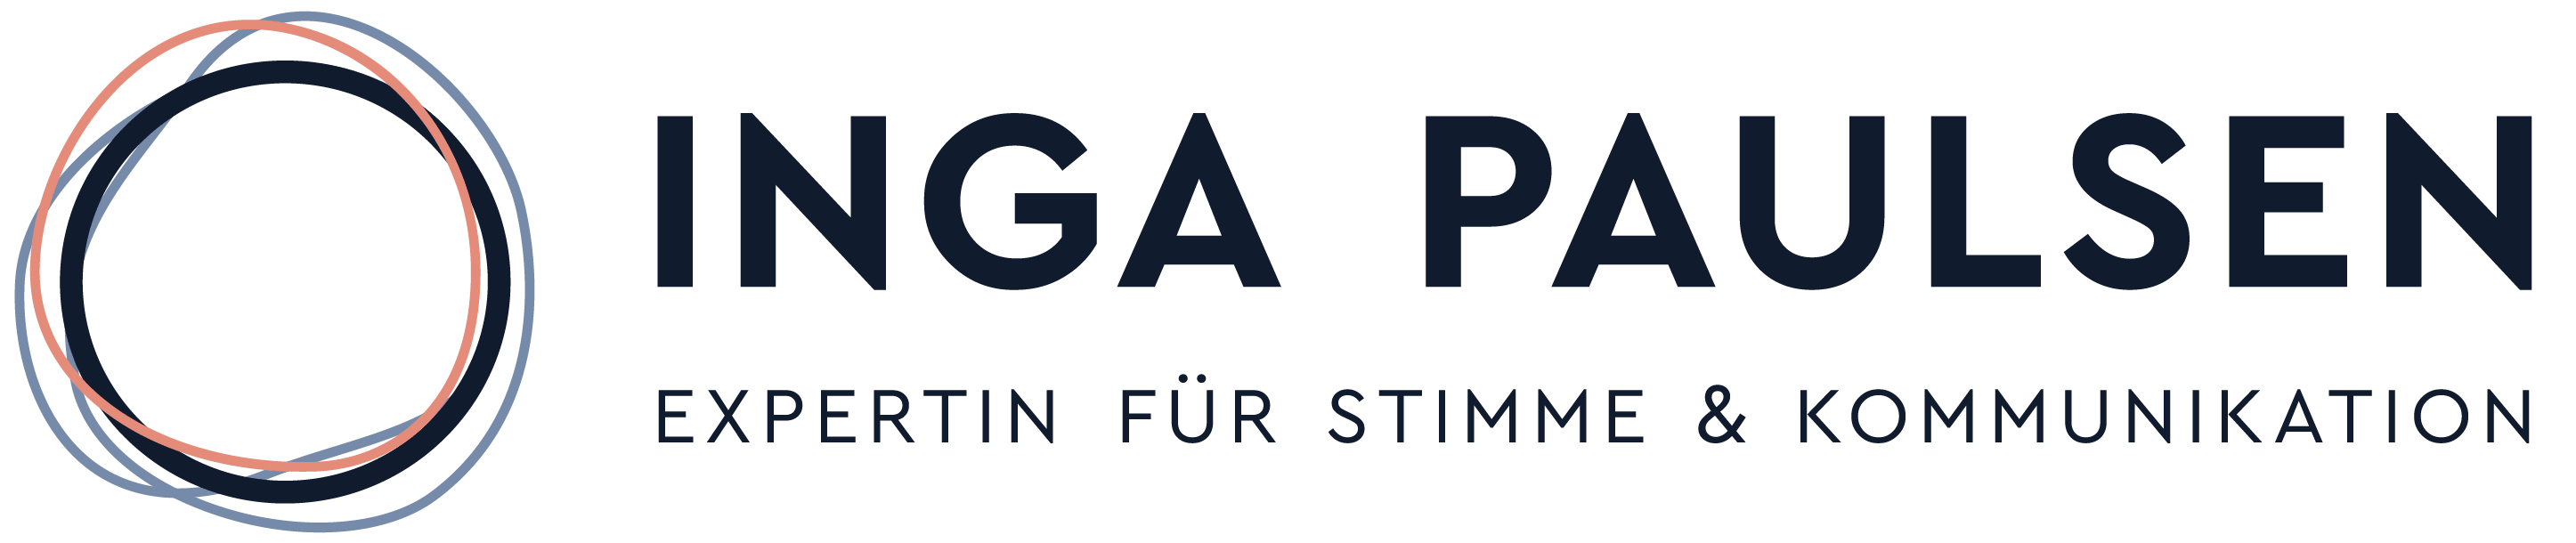 INGA PAULSEN – EXPERTIN FÜR STIMME UND KOMMUNIKATION